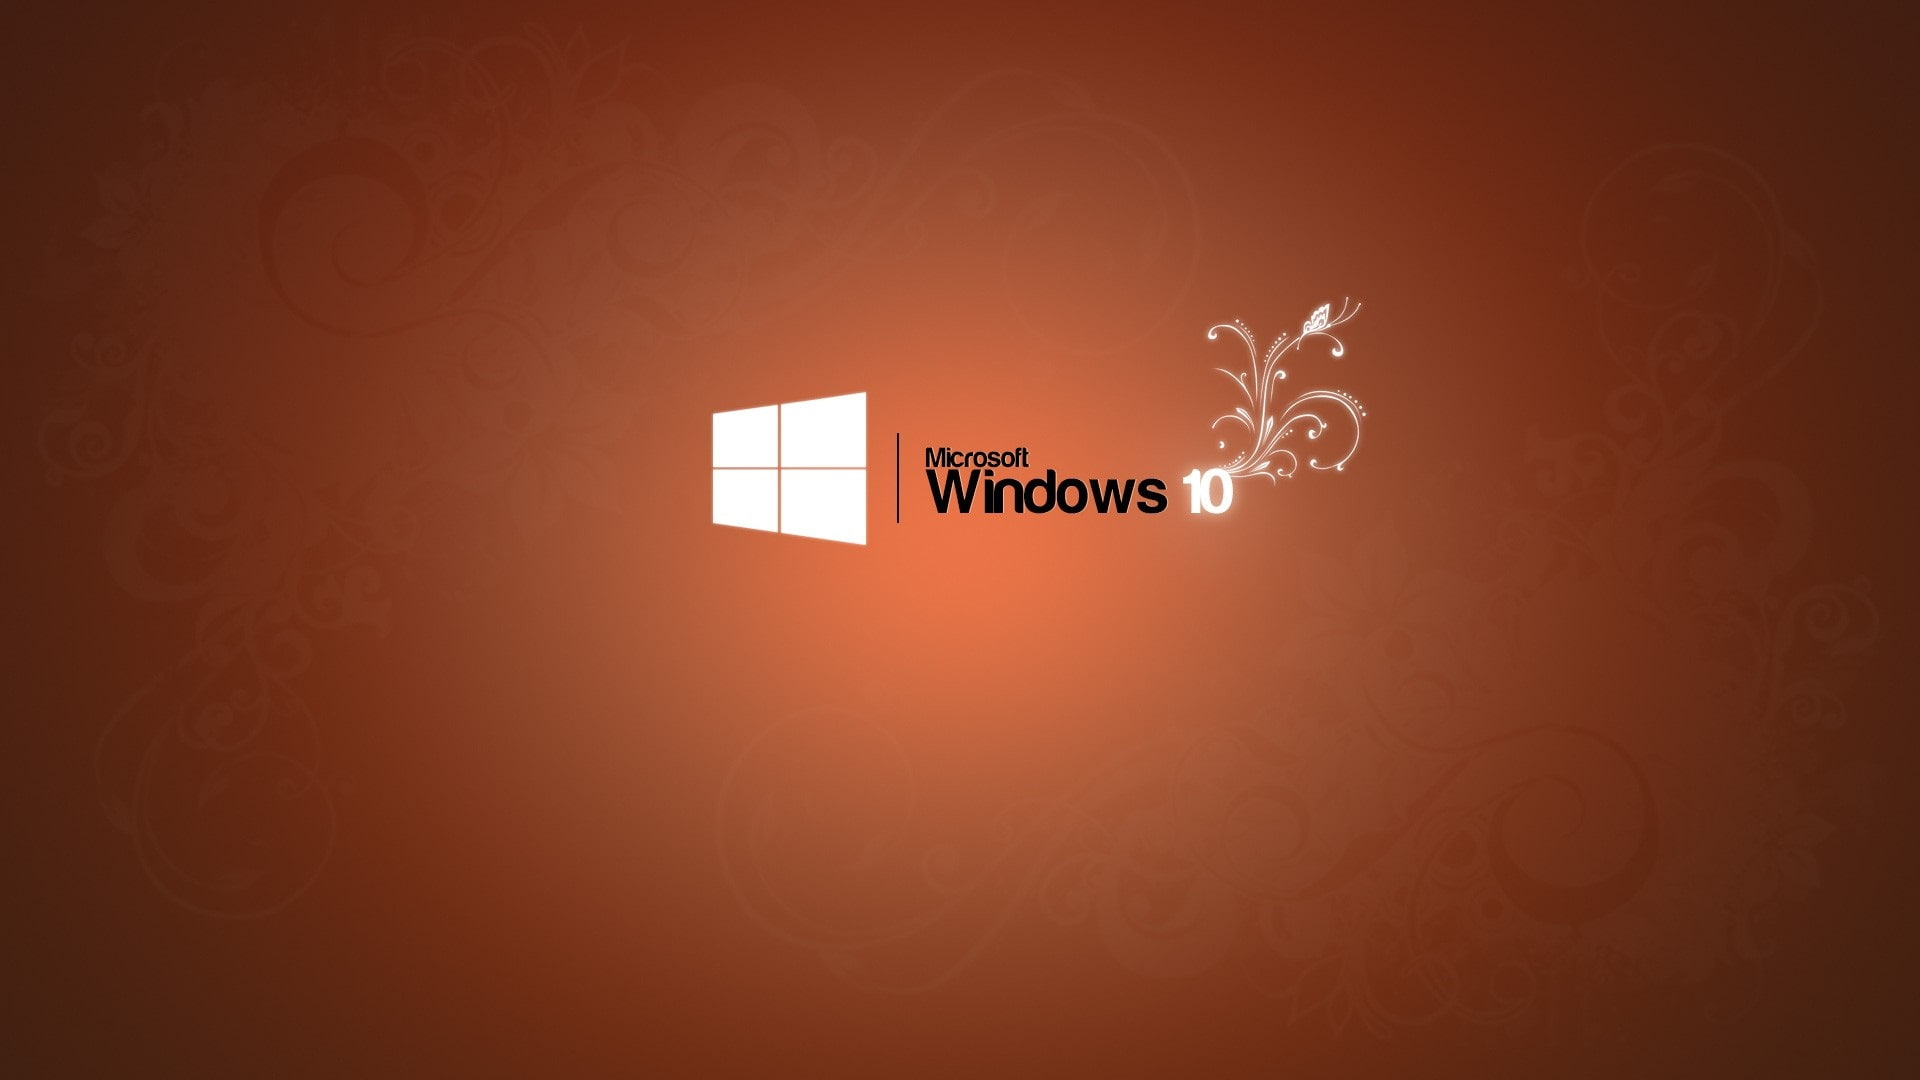 Microsoft Windows 10 logo, orange background